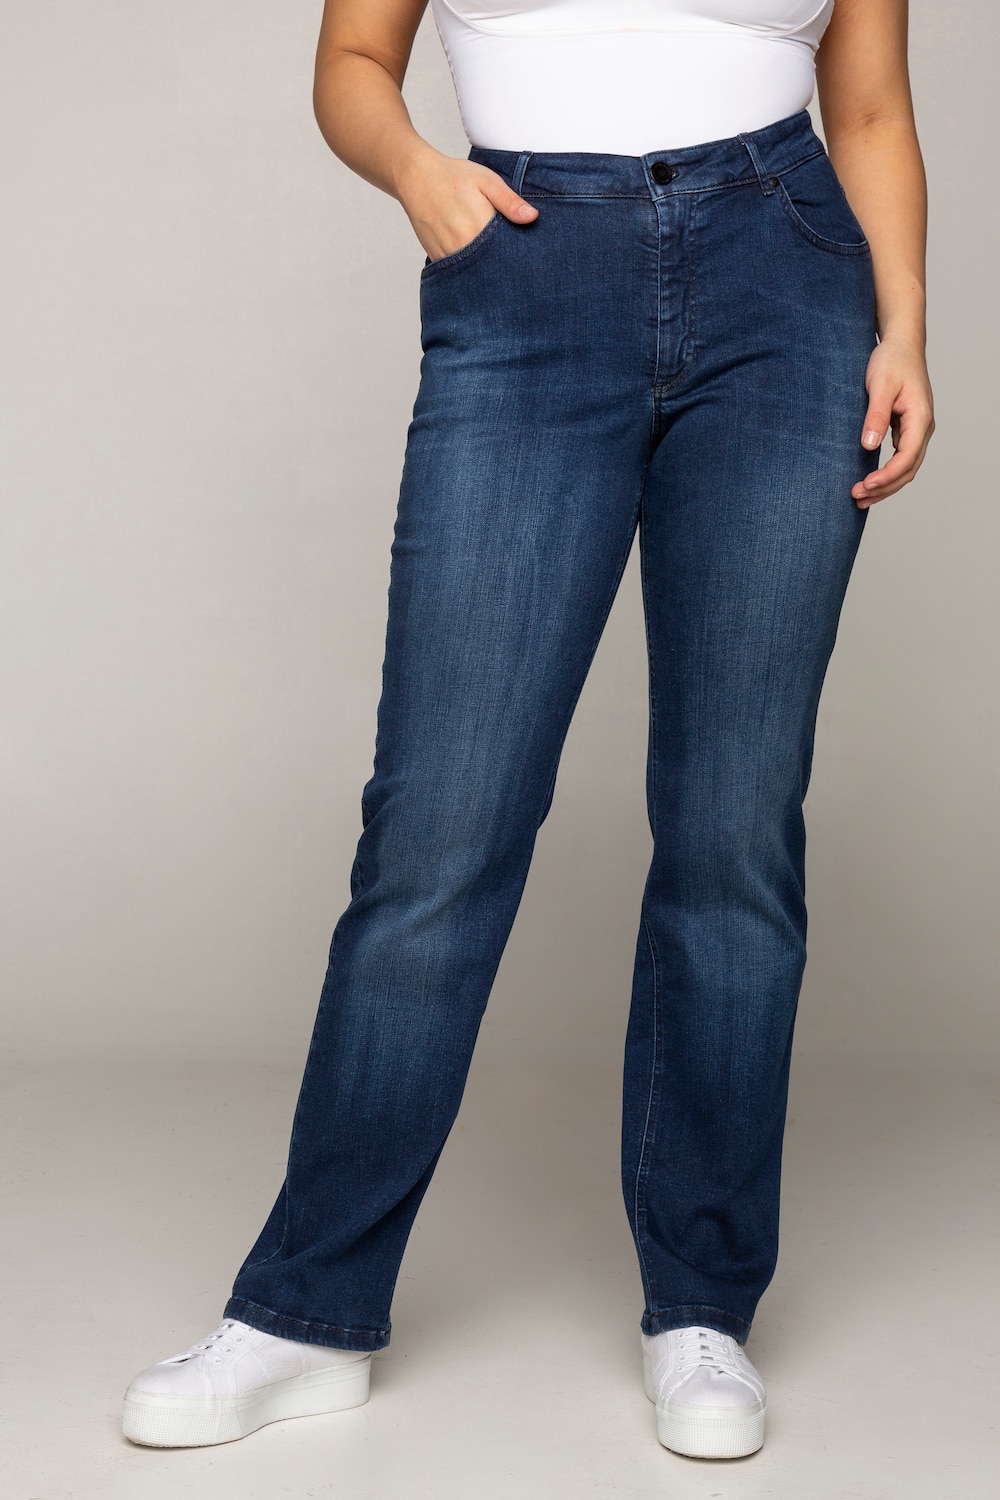 Grote Maten jeans Mandy, Dames, blauw, Maat: 56, Katoen/Synthetische vezels, Ulla Popken